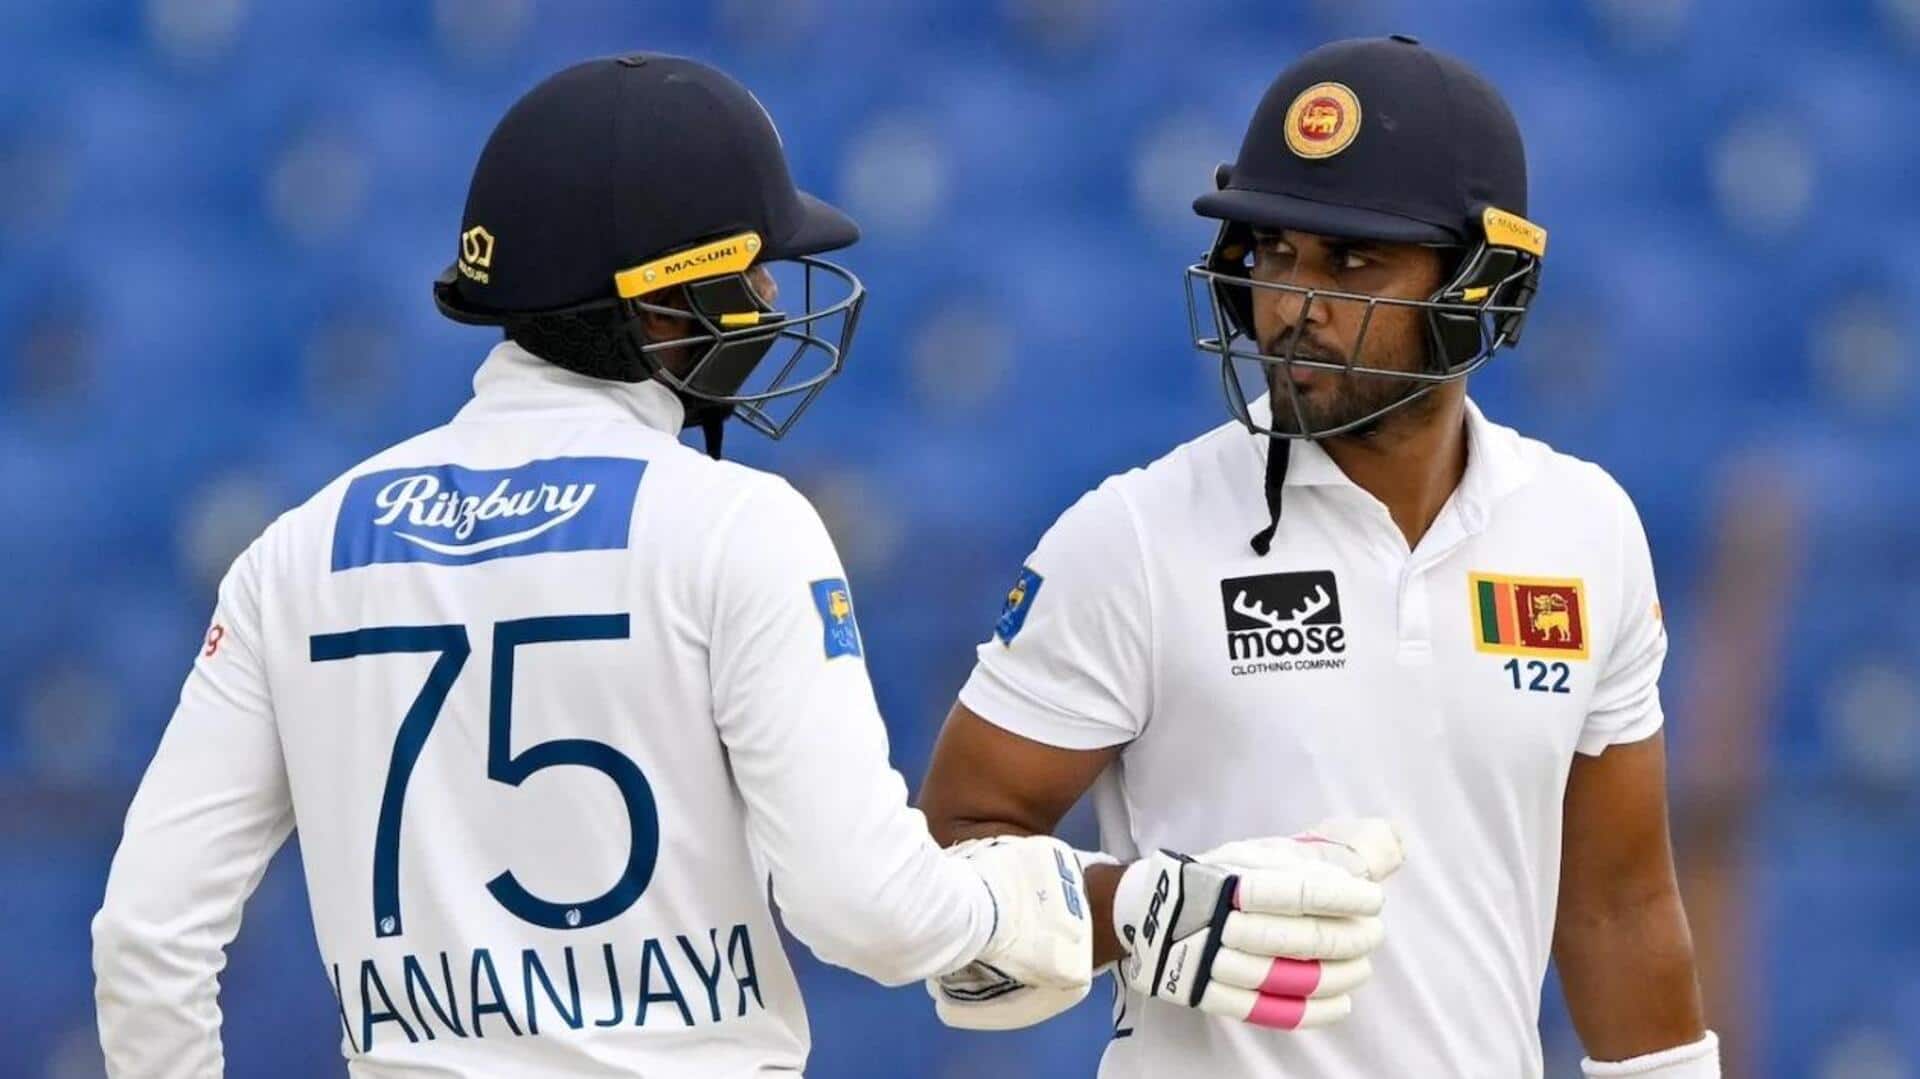 दूसरा टेस्ट: बांग्लादेश के खिलाफ श्रीलंकाई टीम जीत की ओर अग्रसर, ऐसा रहा चौथा दिन